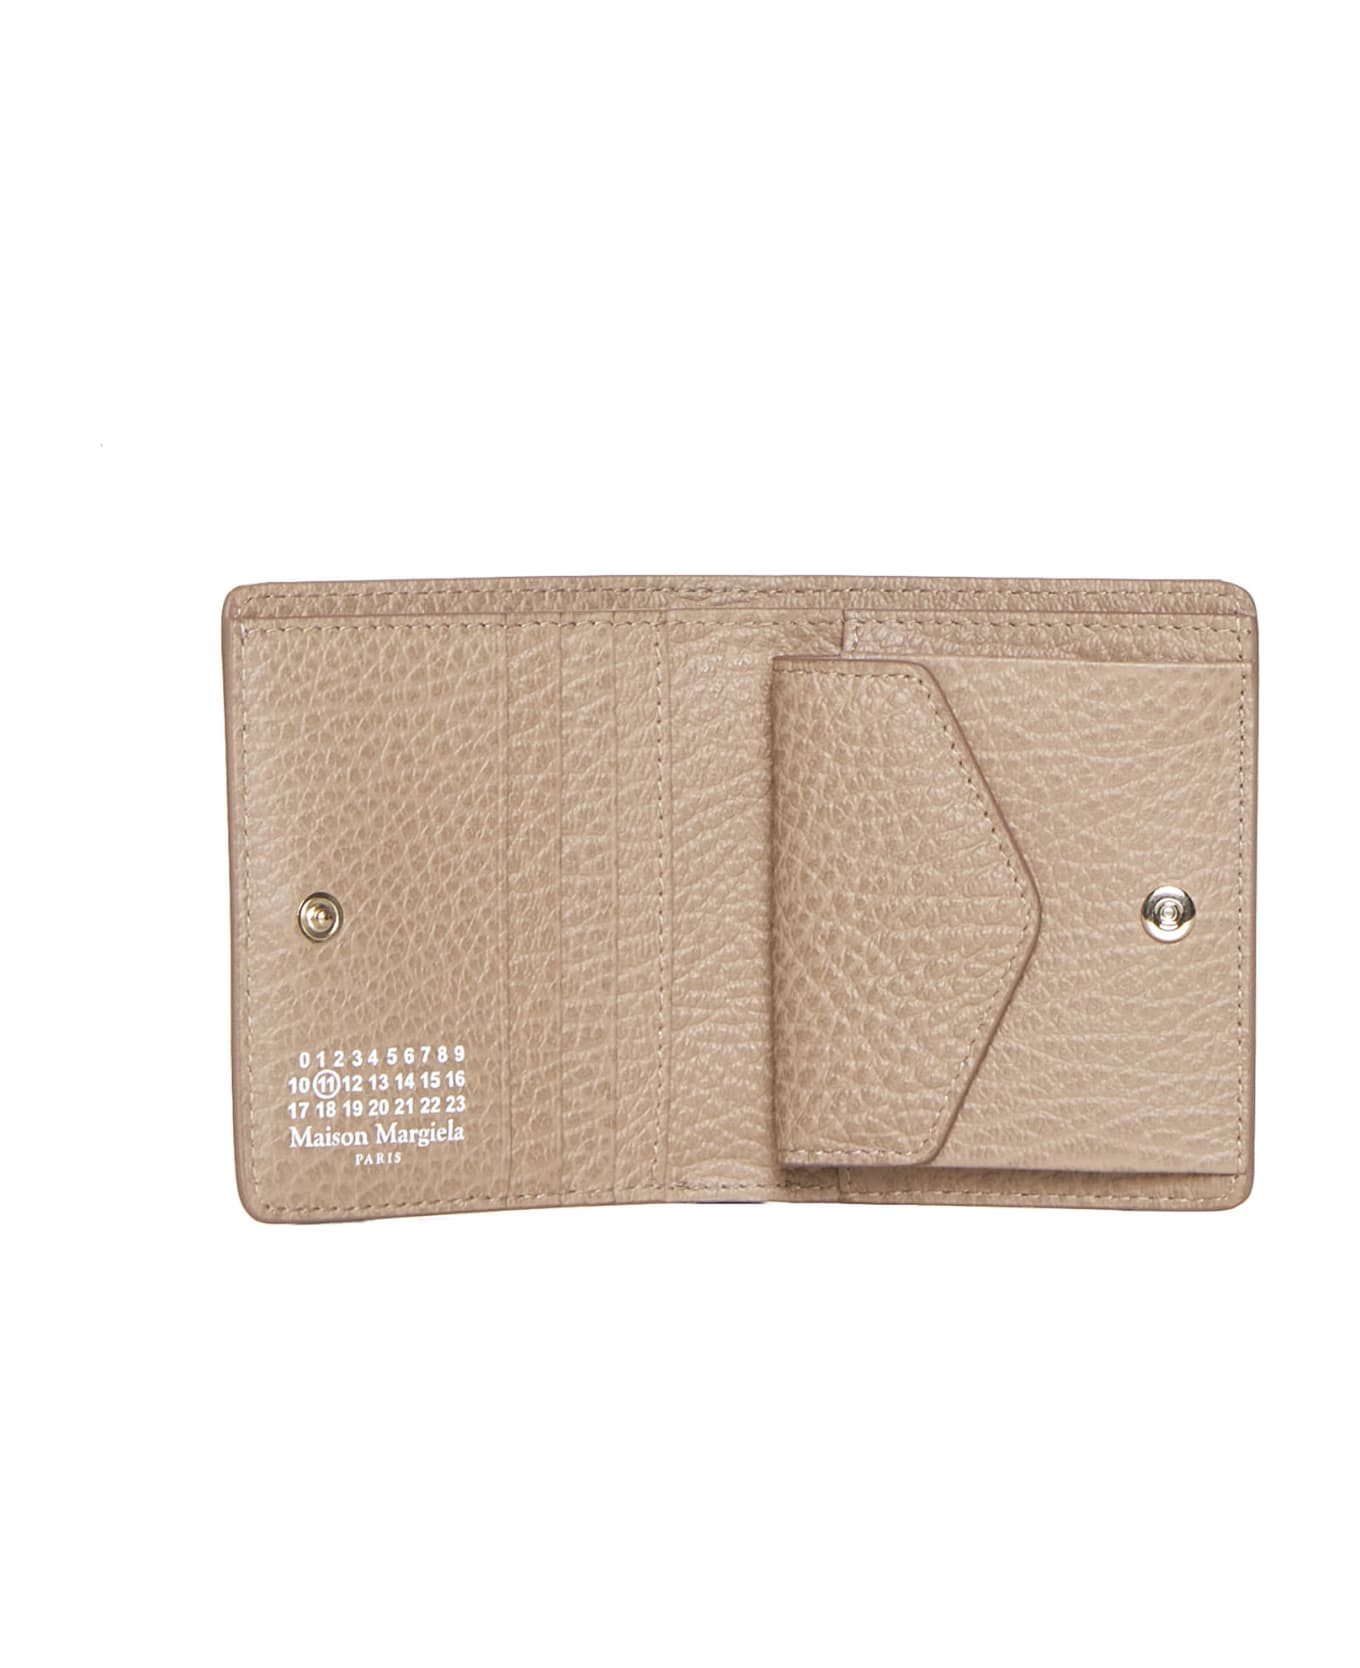 Maison Margiela Four-stitches Compact Wallet - Biche